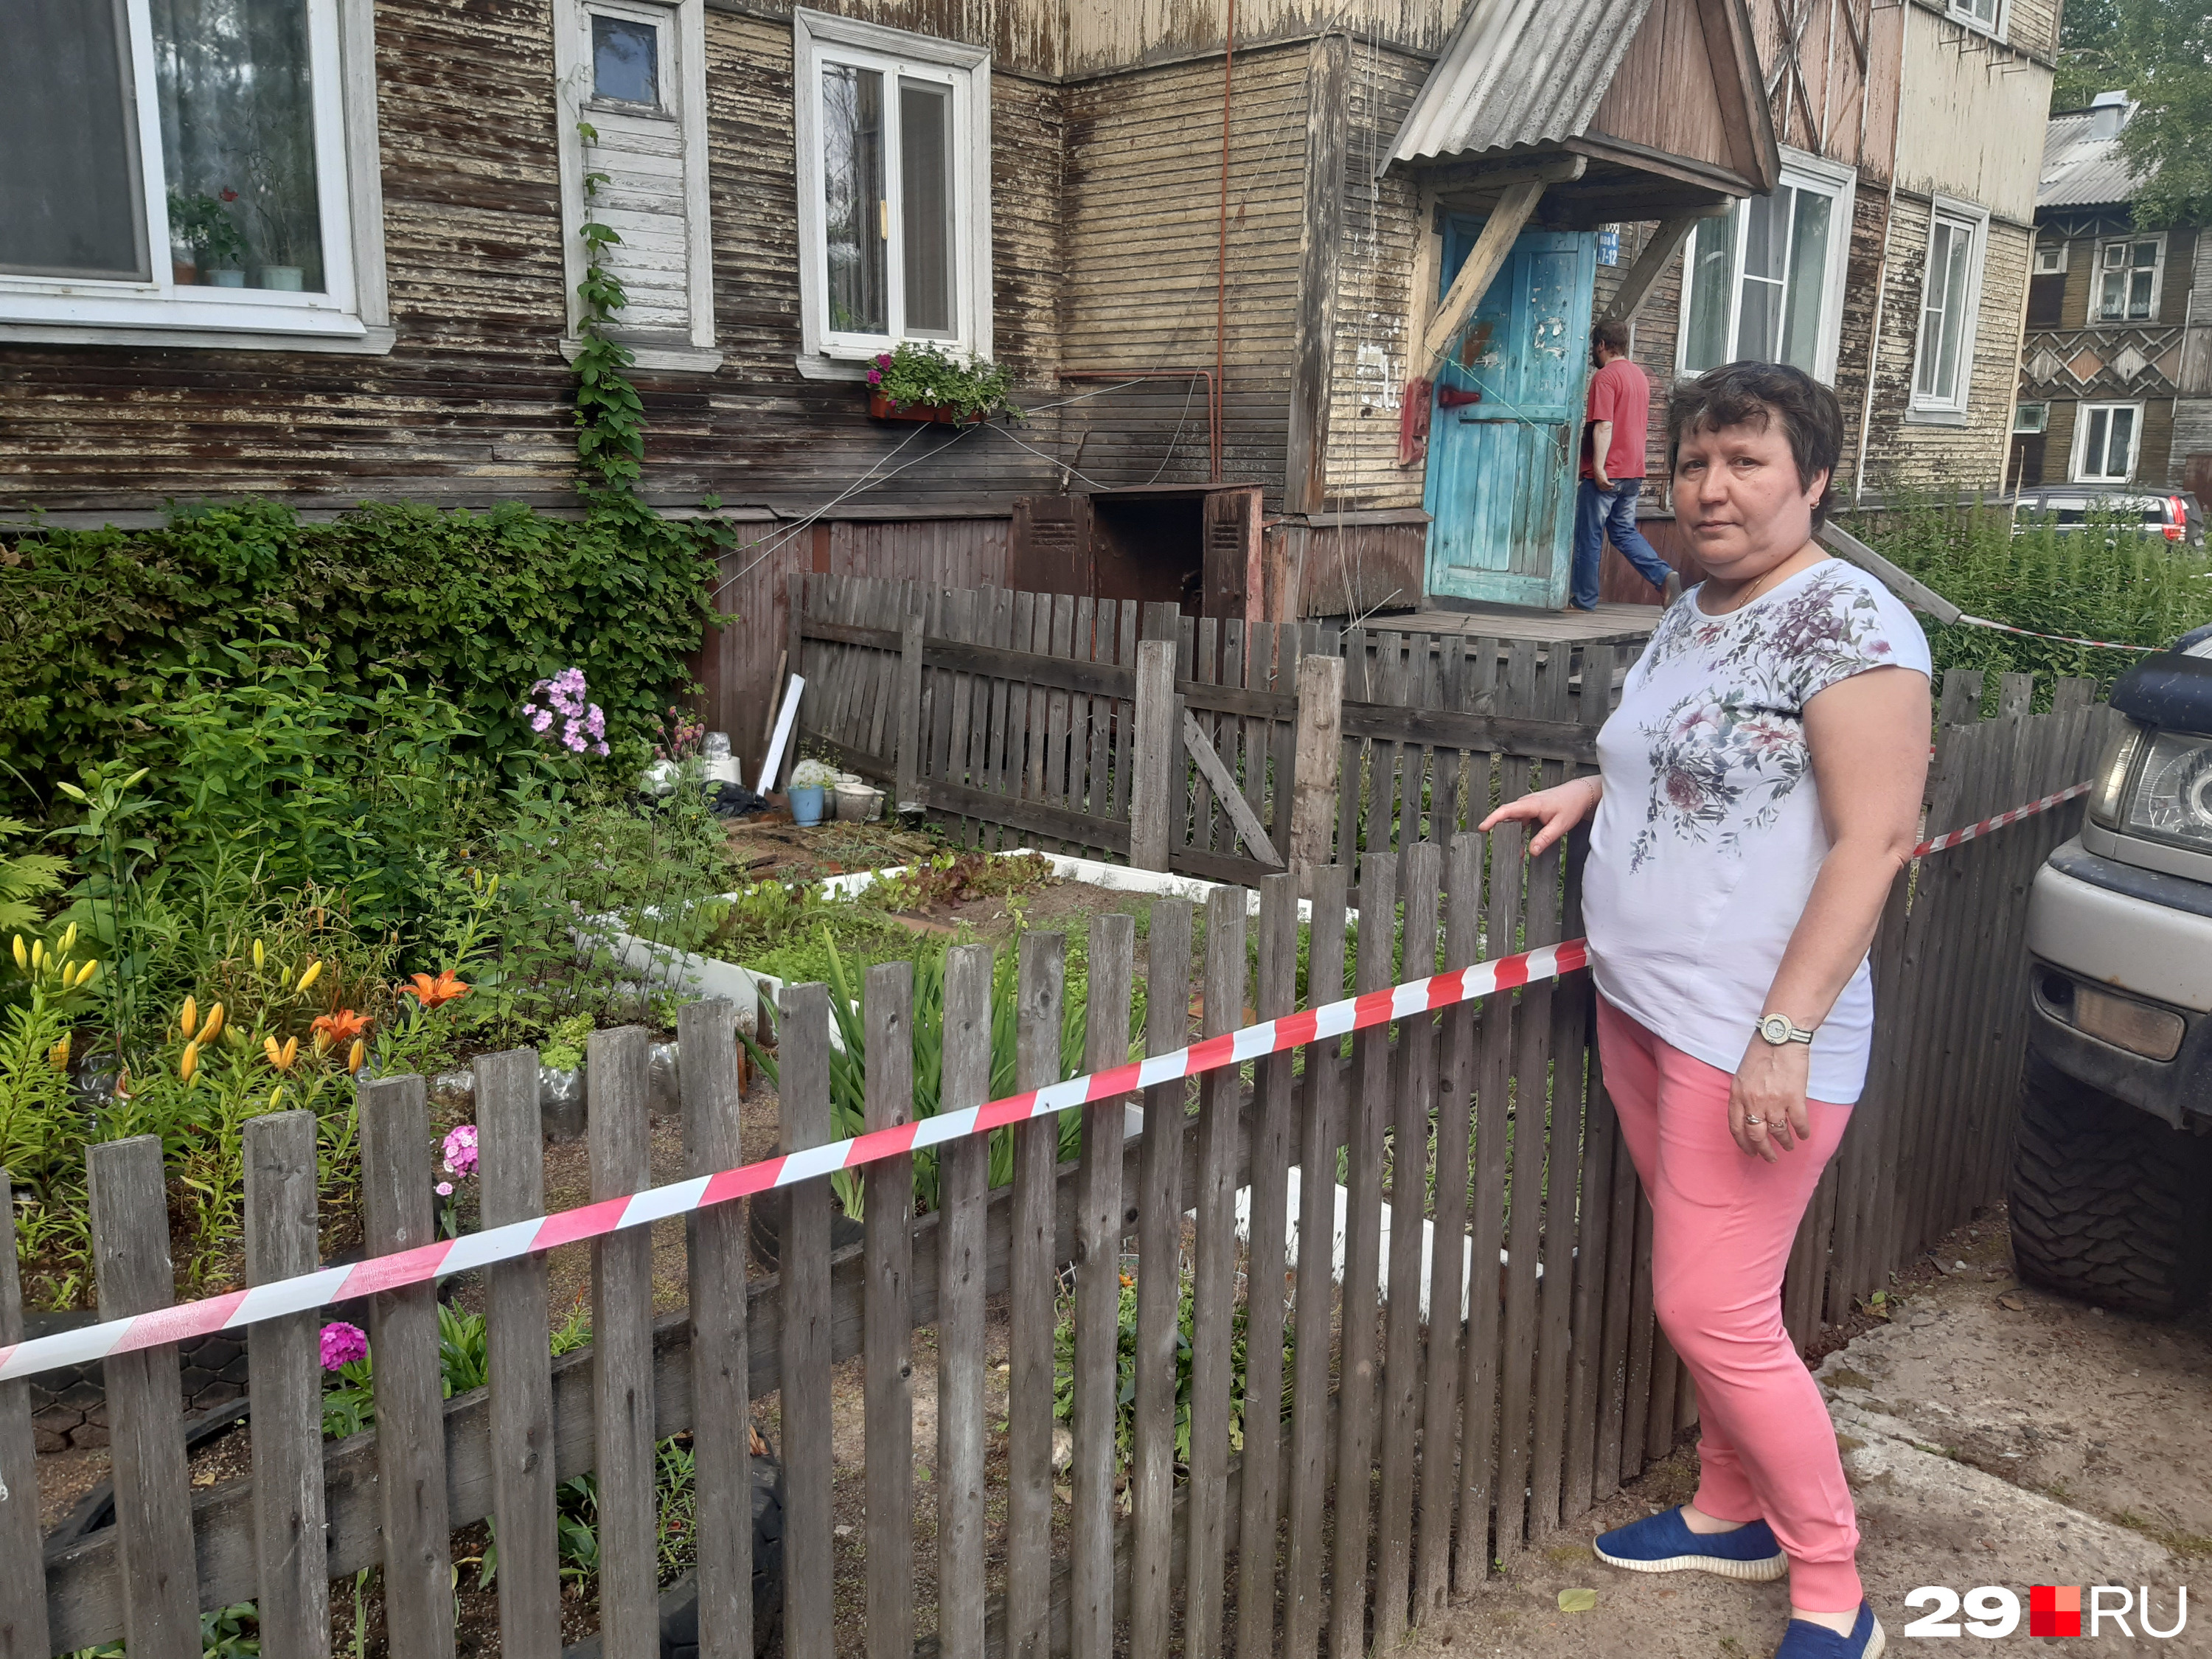 Наталья Козлова жалеет свой огород и клумбы — их придется бросить. Сама она и члены ее семьи временно переедут на дачу к родственникам